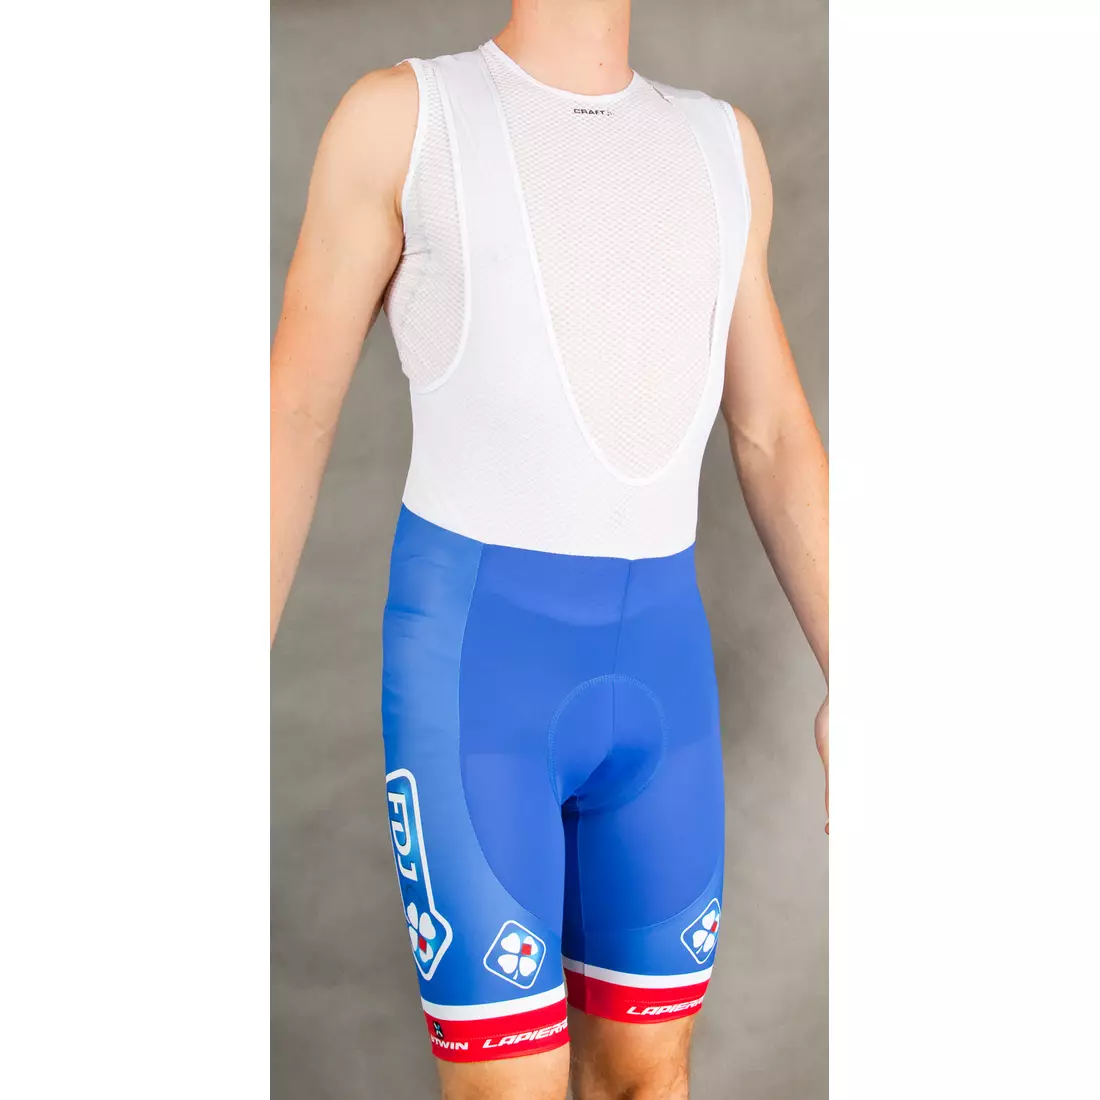 FDJ 2015 cycling shorts